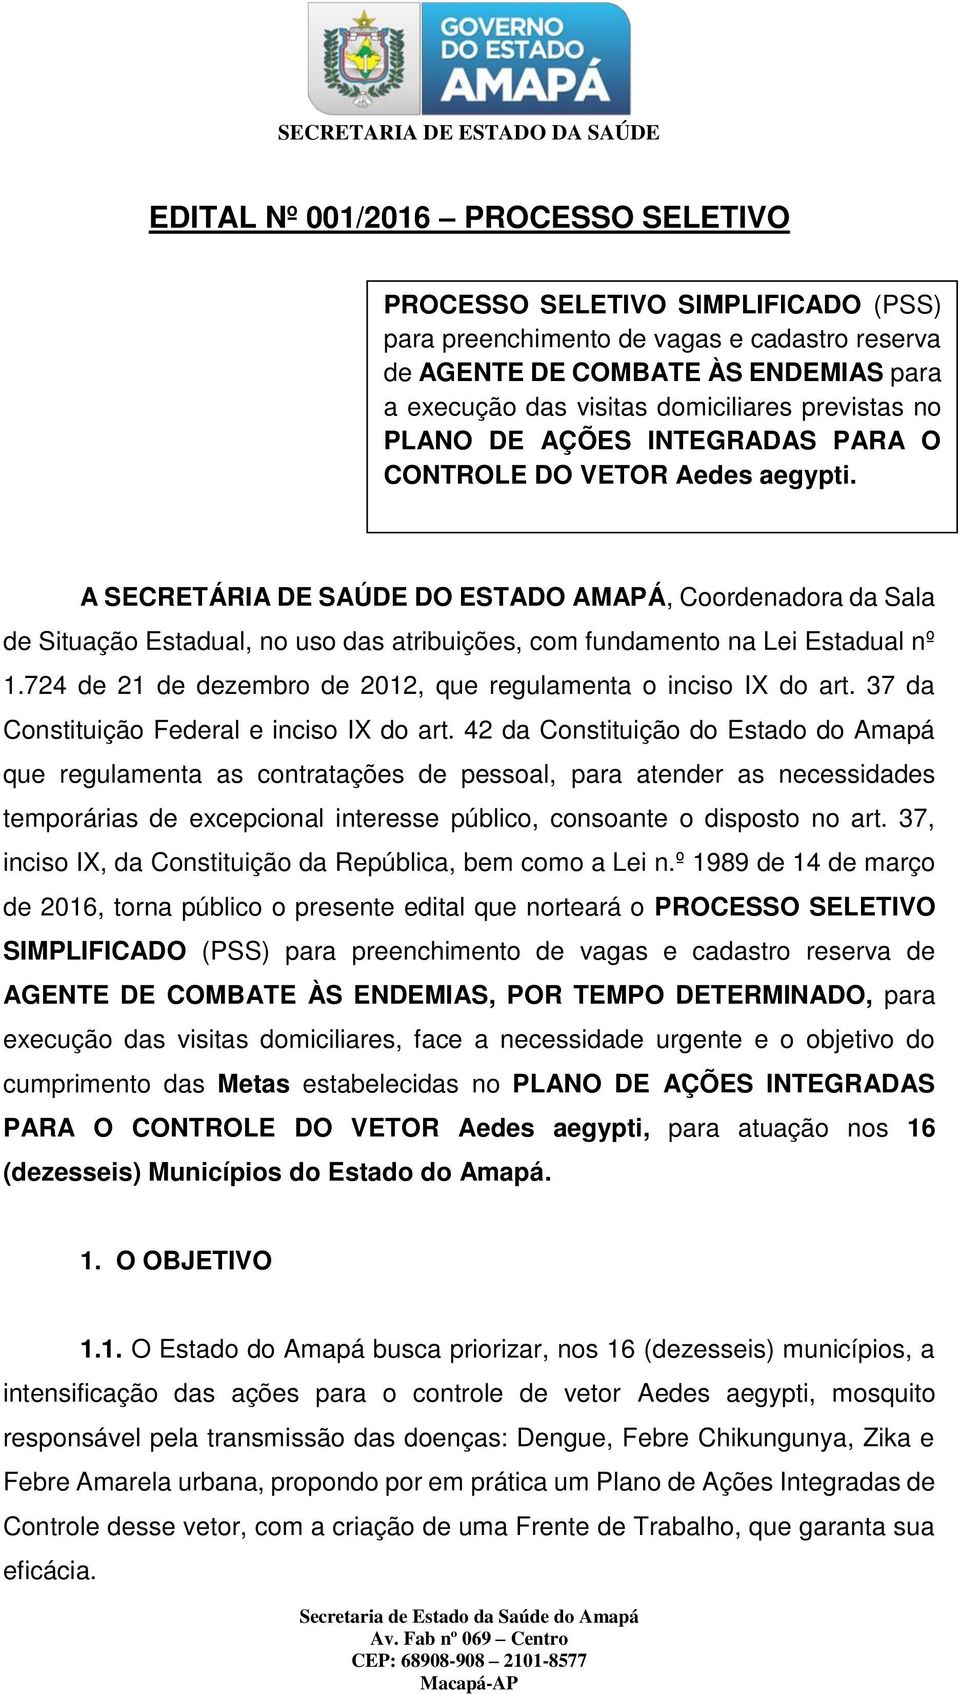 A SECRETÁRIA DE SAÚDE DO ESTADO AMAPÁ, Coordenadora da Sala de Situação Estadual, no uso das atribuições, com fundamento na Lei Estadual nº 1.